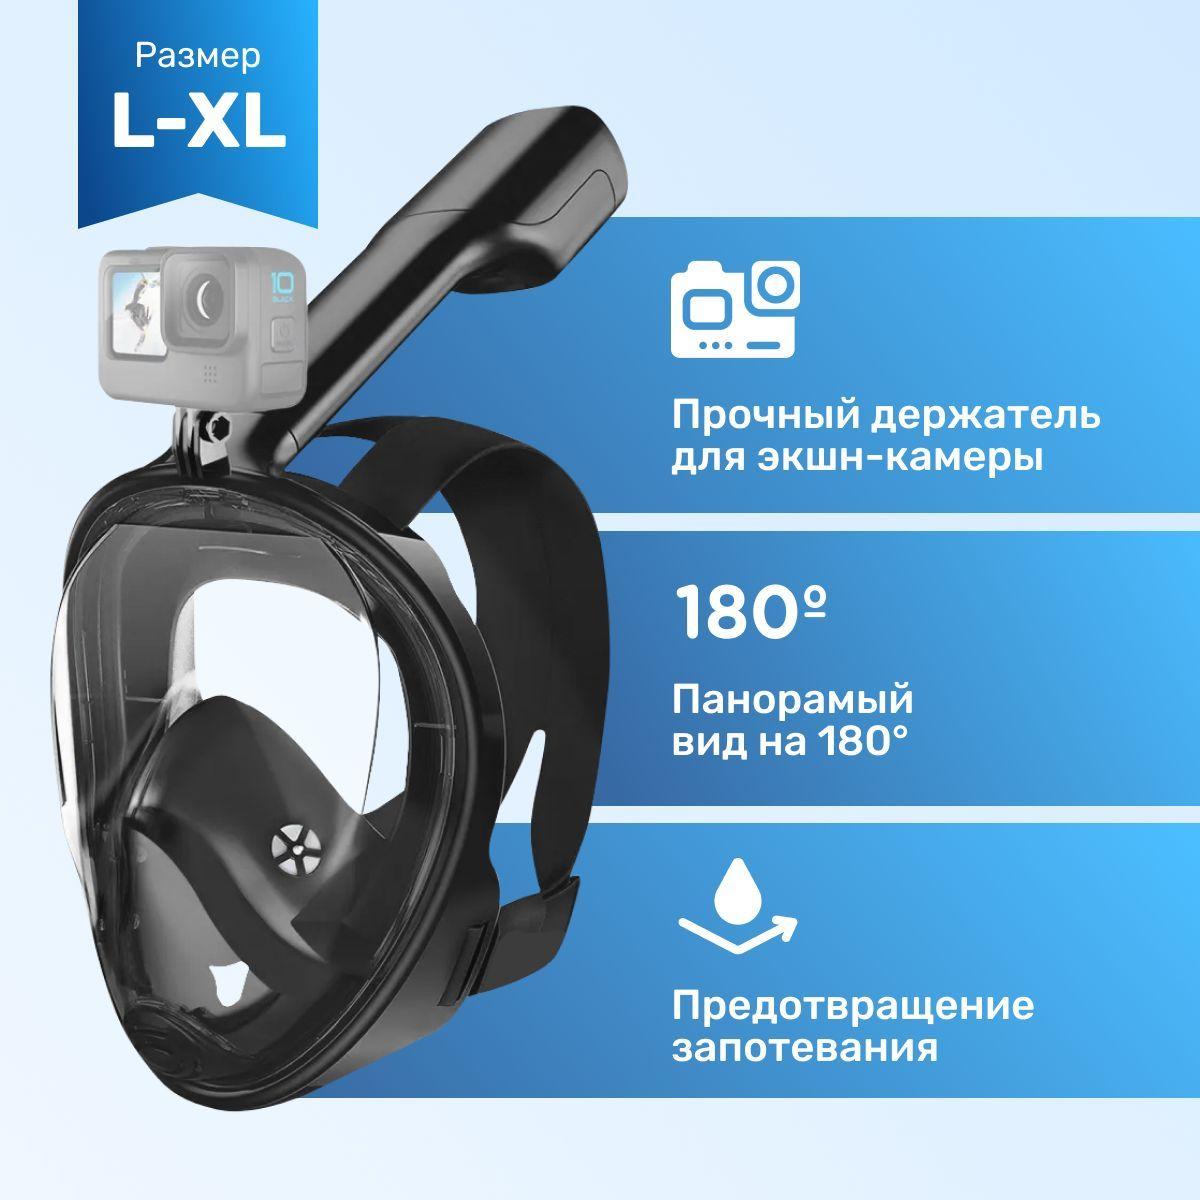 Free Breath Полнолицевая маска для плавания (снорклинга) с креплением для экшн-камеры L/XL, черная